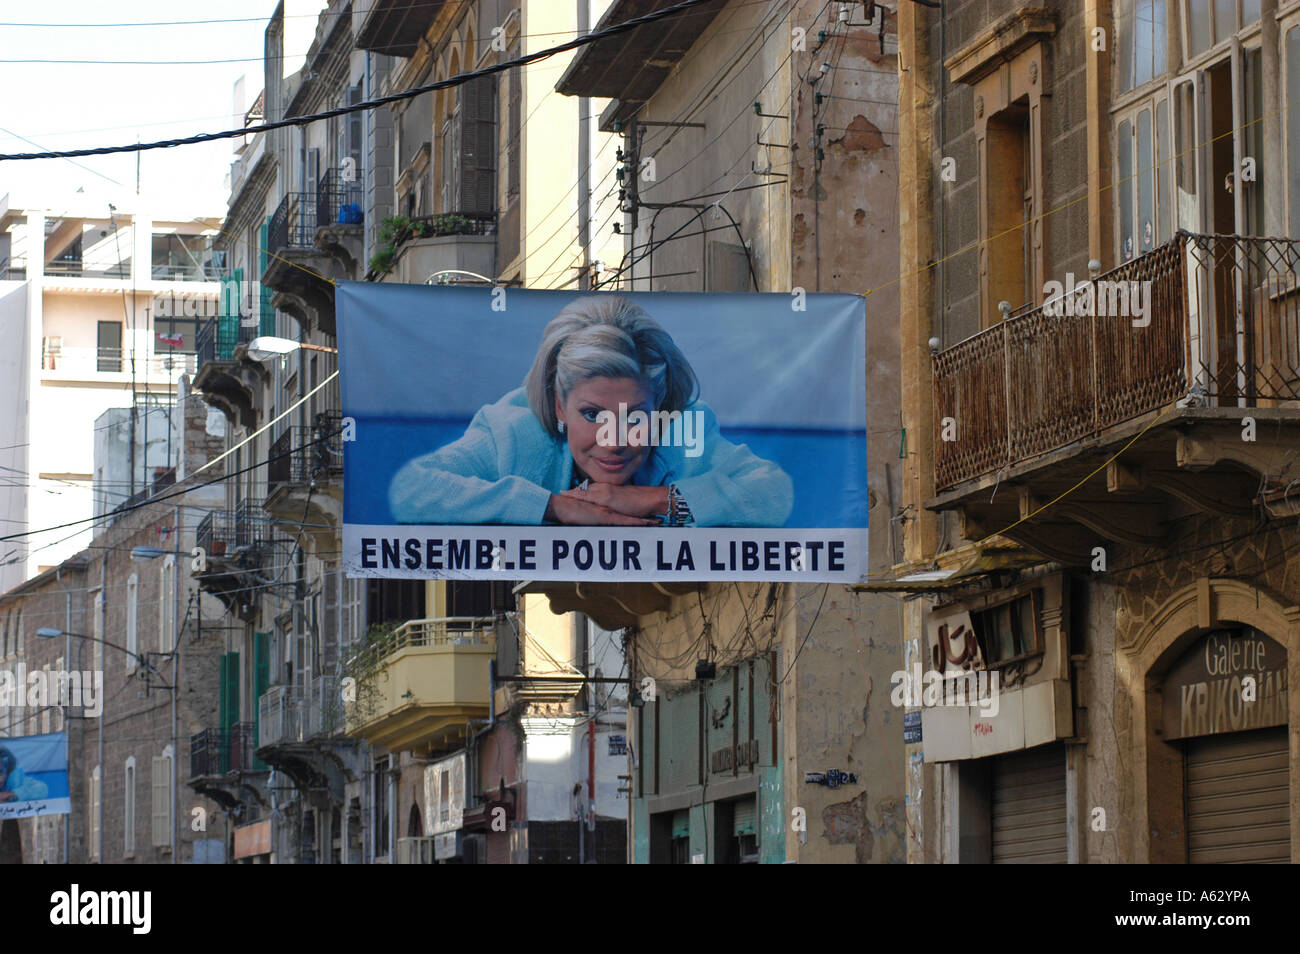 Le centre-ville de Beyrouth Gemayze avec poster de May Chidiac le célèbre journaliste qui a été la victime d'une attaque terroriste Banque D'Images